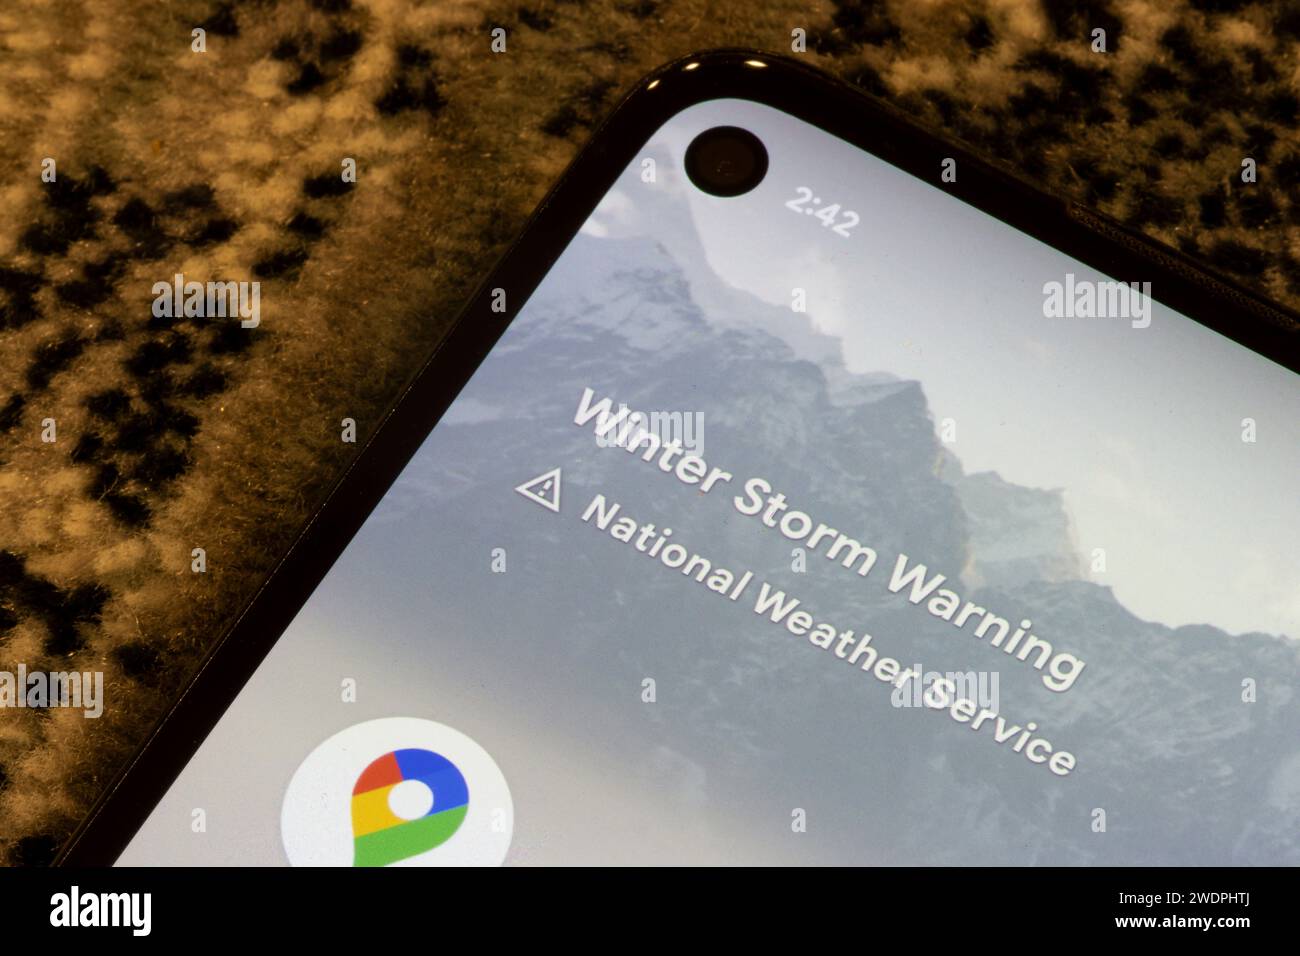 Die Benachrichtigung über die Wintersturmwarnung des National Weather Service, einer Behörde der US-Regierung, wird auf einem Google-Telefon angezeigt. Stockfoto